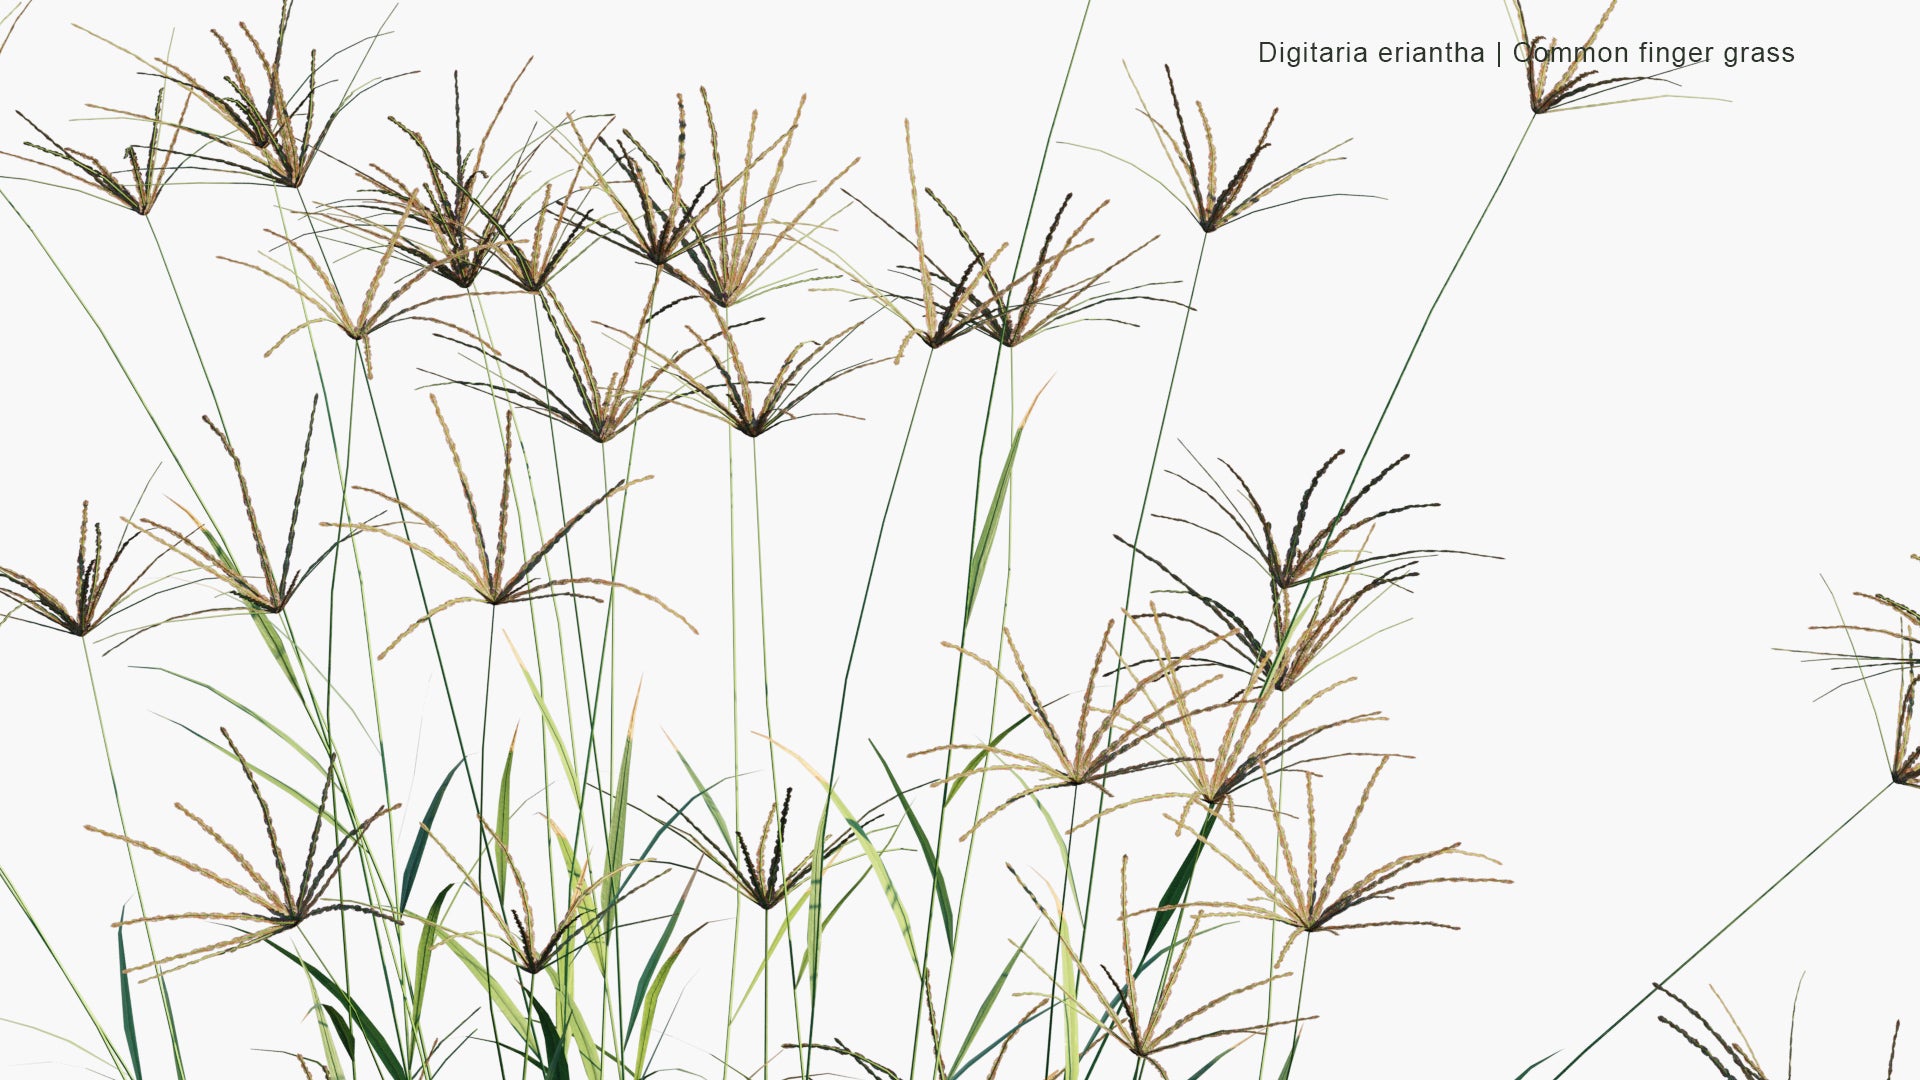 Low Poly Digitaria Eriantha - Digitgrass, Pangola-Grass, Common Finger Grass (3D Model)